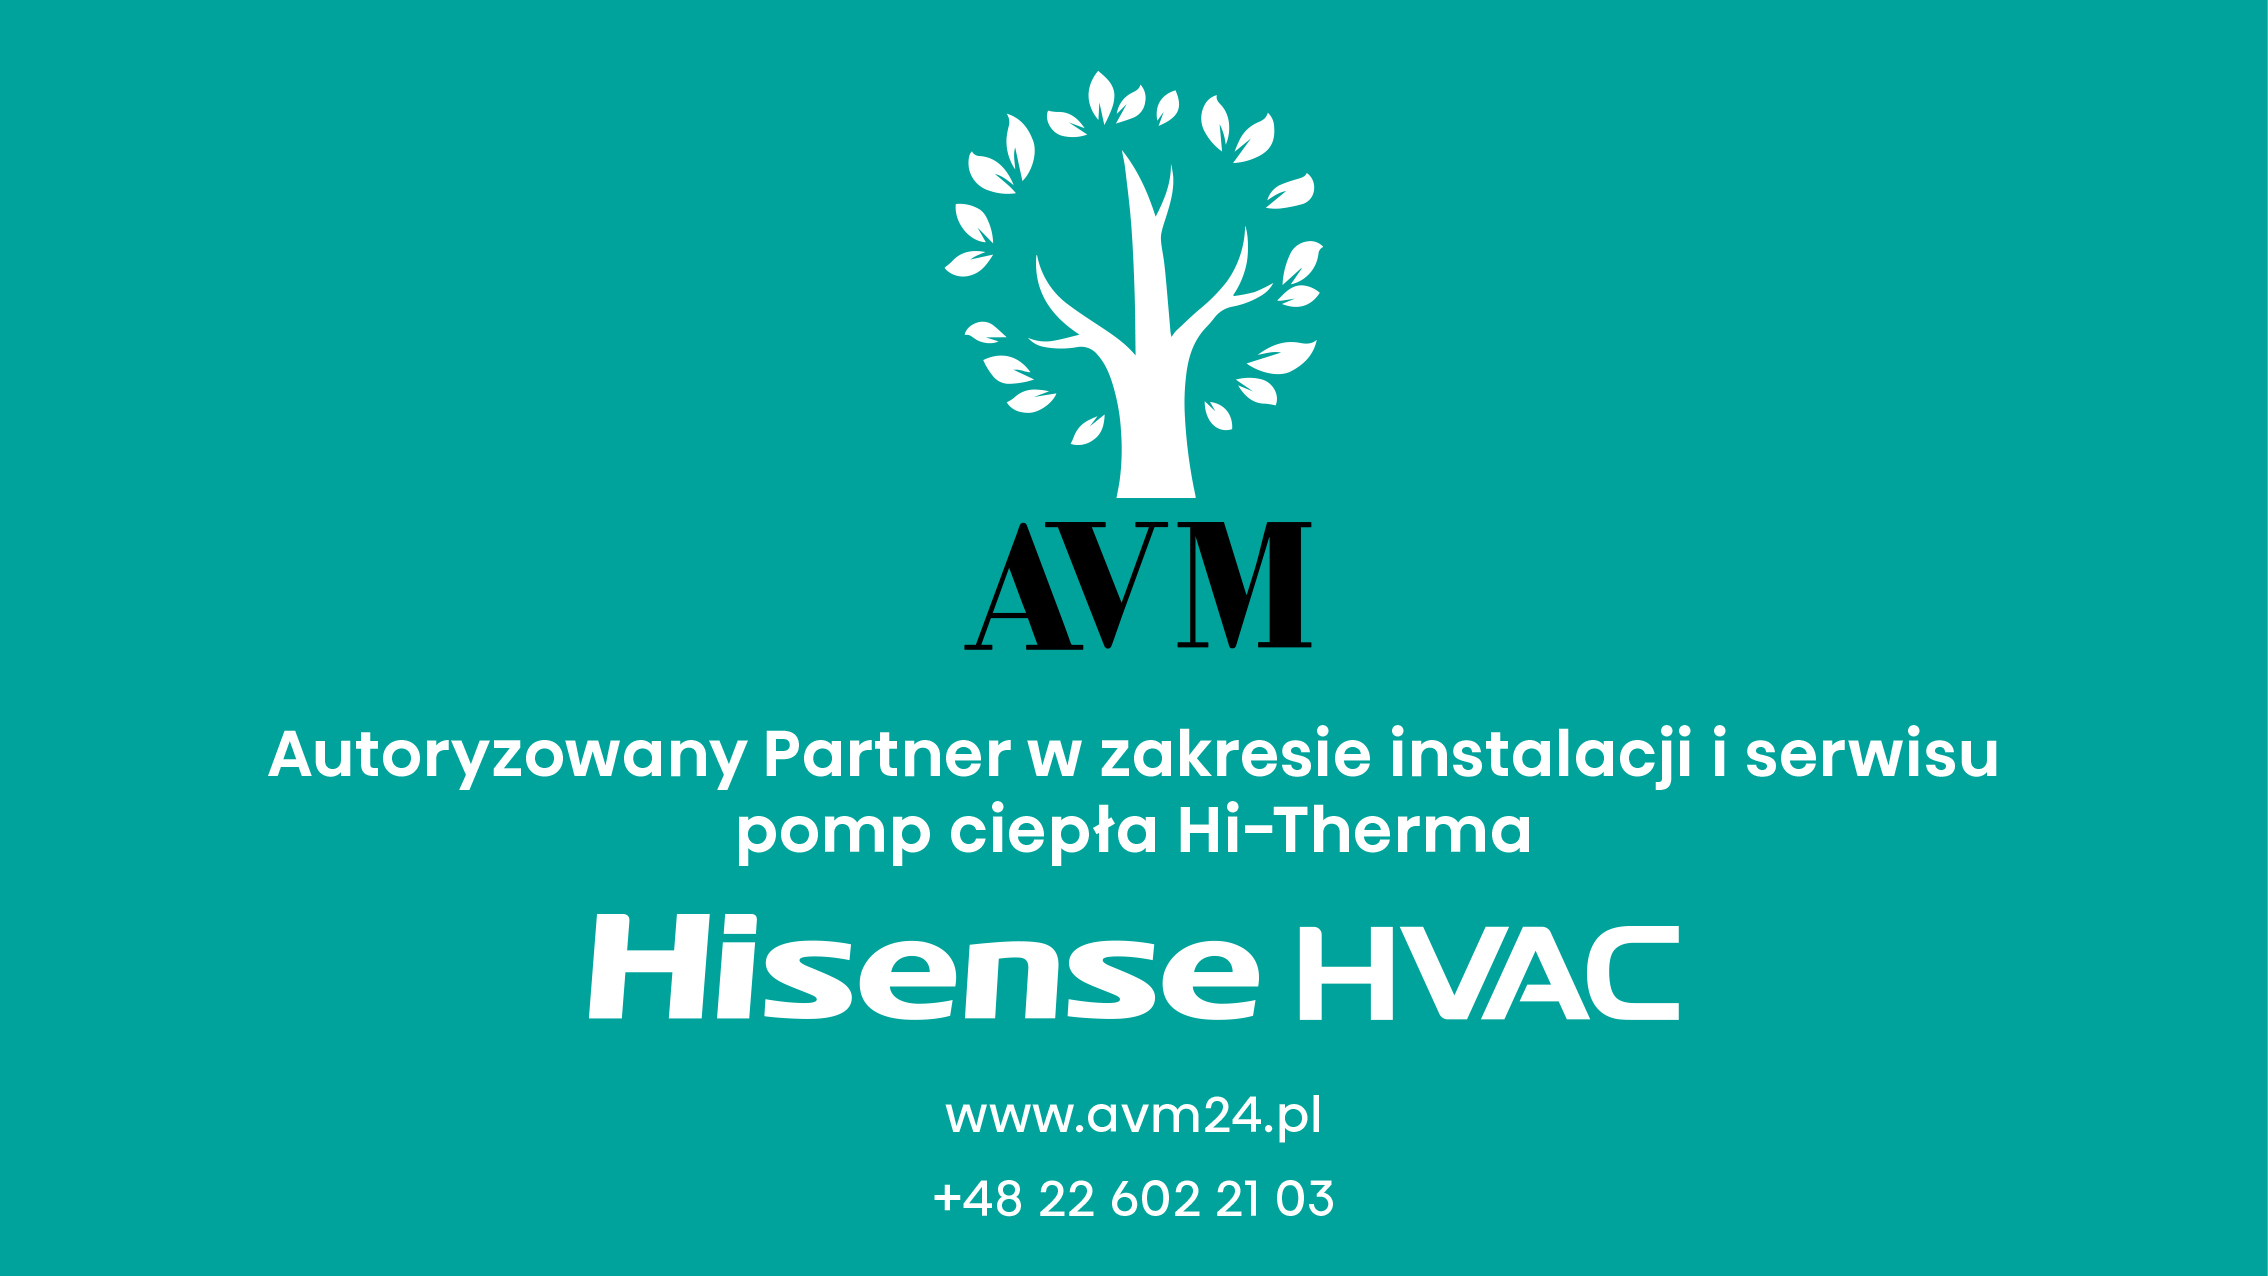 avm-autoryzowanym-partnerem-w-zakresie-instalacji-i-serwisu-pomp-ciepla-hi-therma-hisense